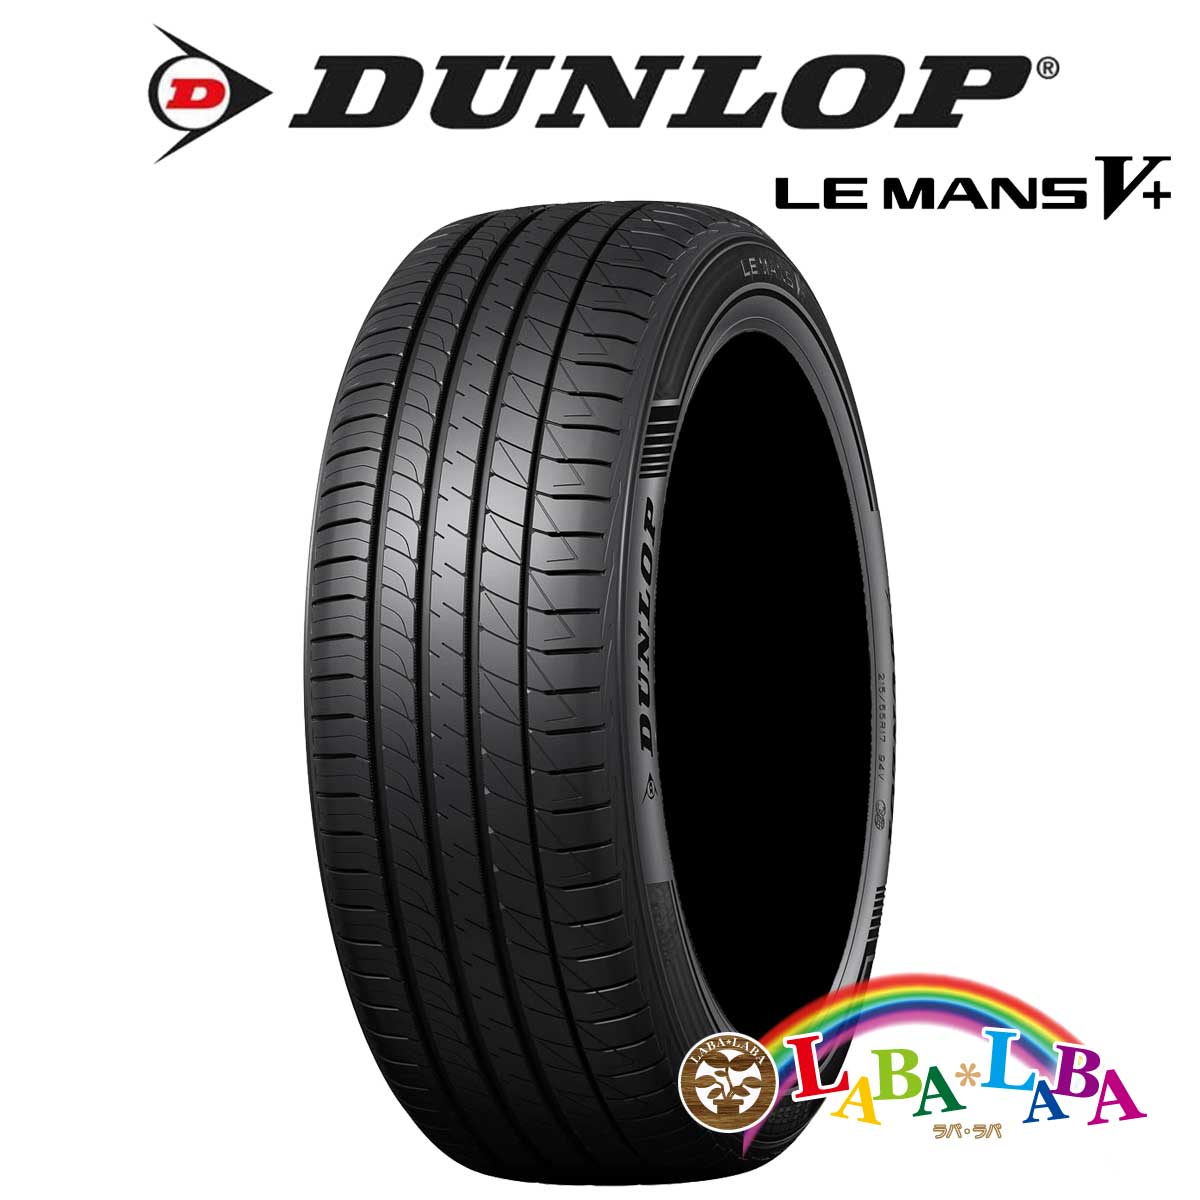 DUNLOP LE MANS V+ LM5+ 215/40R17 87W XL サマータイヤ 4本セット